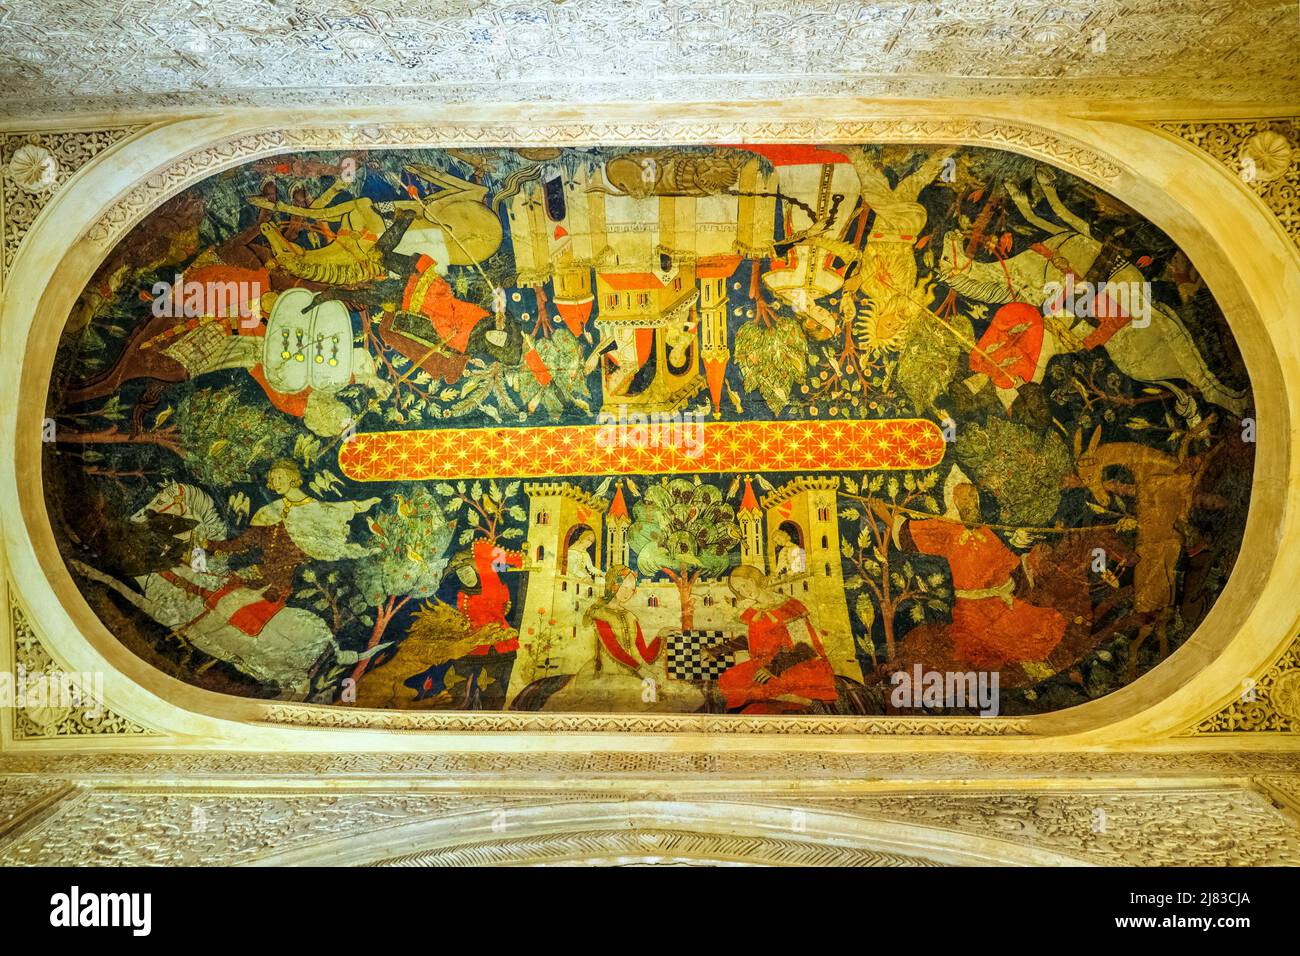 Peinture sur le plafond d'une alcôve dans la salle des Rois (Sala de los Reyes) dans les palais royaux de Nasrid - complexe de l'Alhambra - Grenade, Espagne Banque D'Images